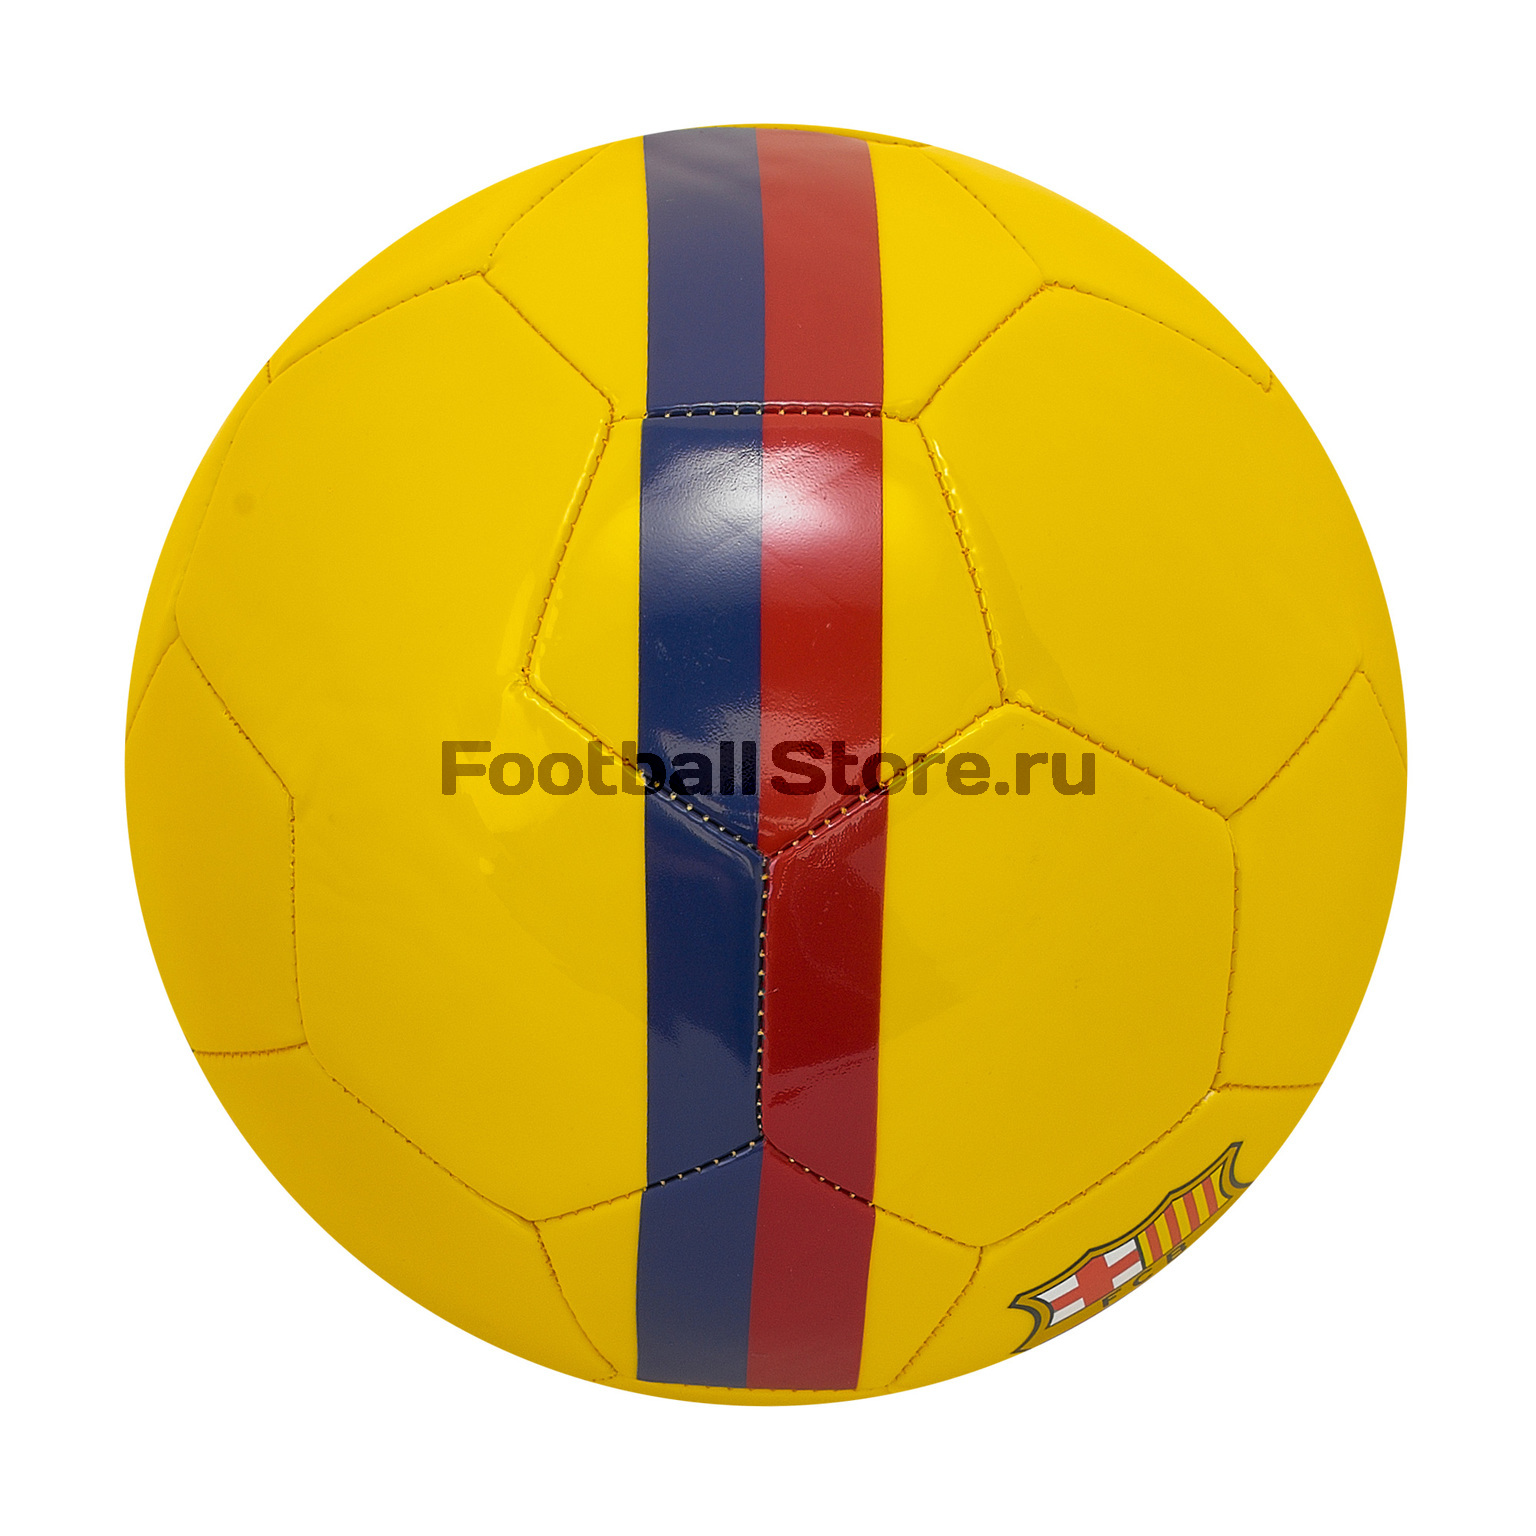 Футбольный мяч Nike Barcelona SC3779-726